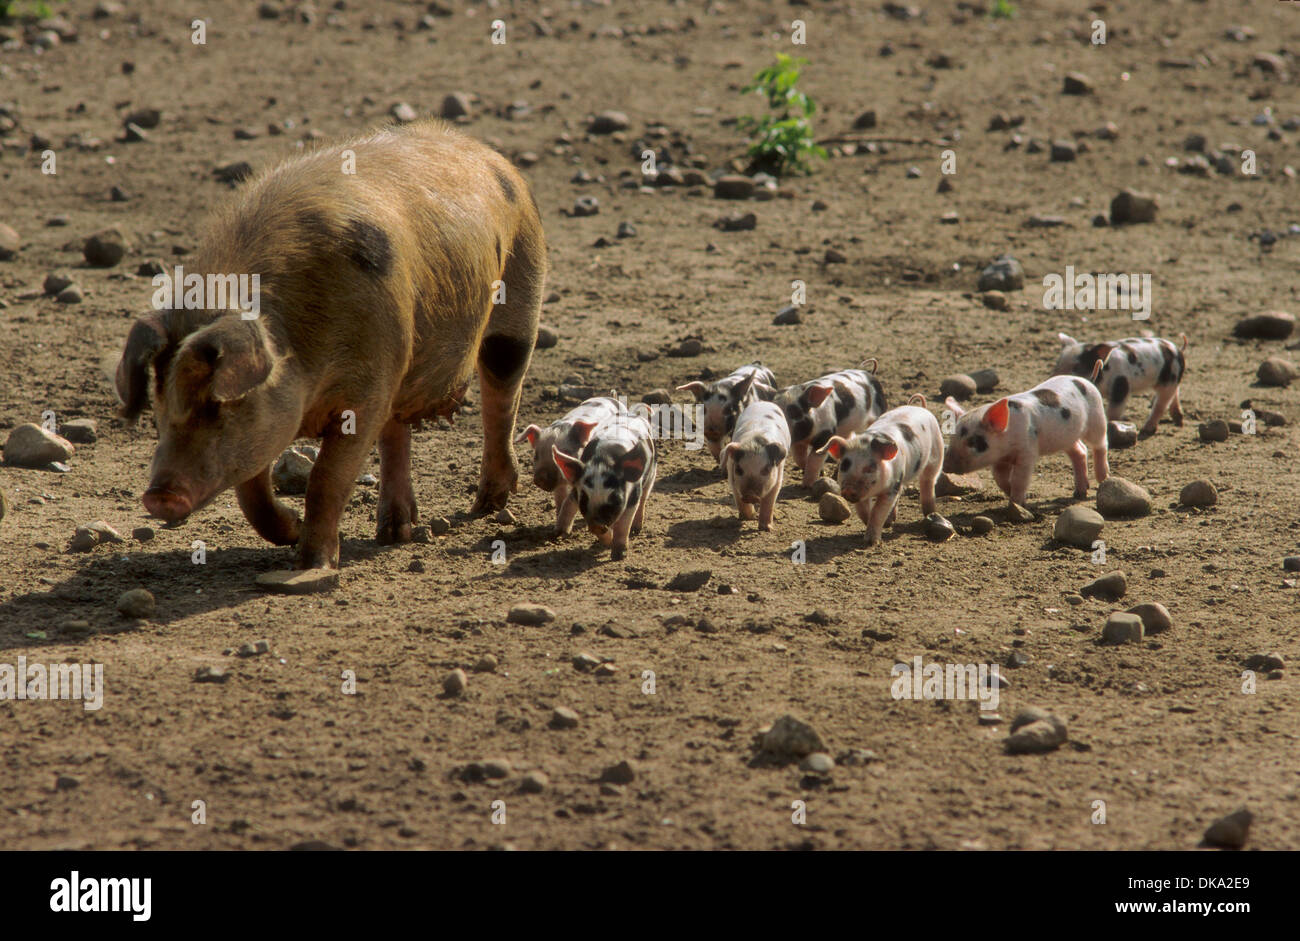 Turopolje-Schwein, Turopolje pig, Turopoljska svinja Stock Photo